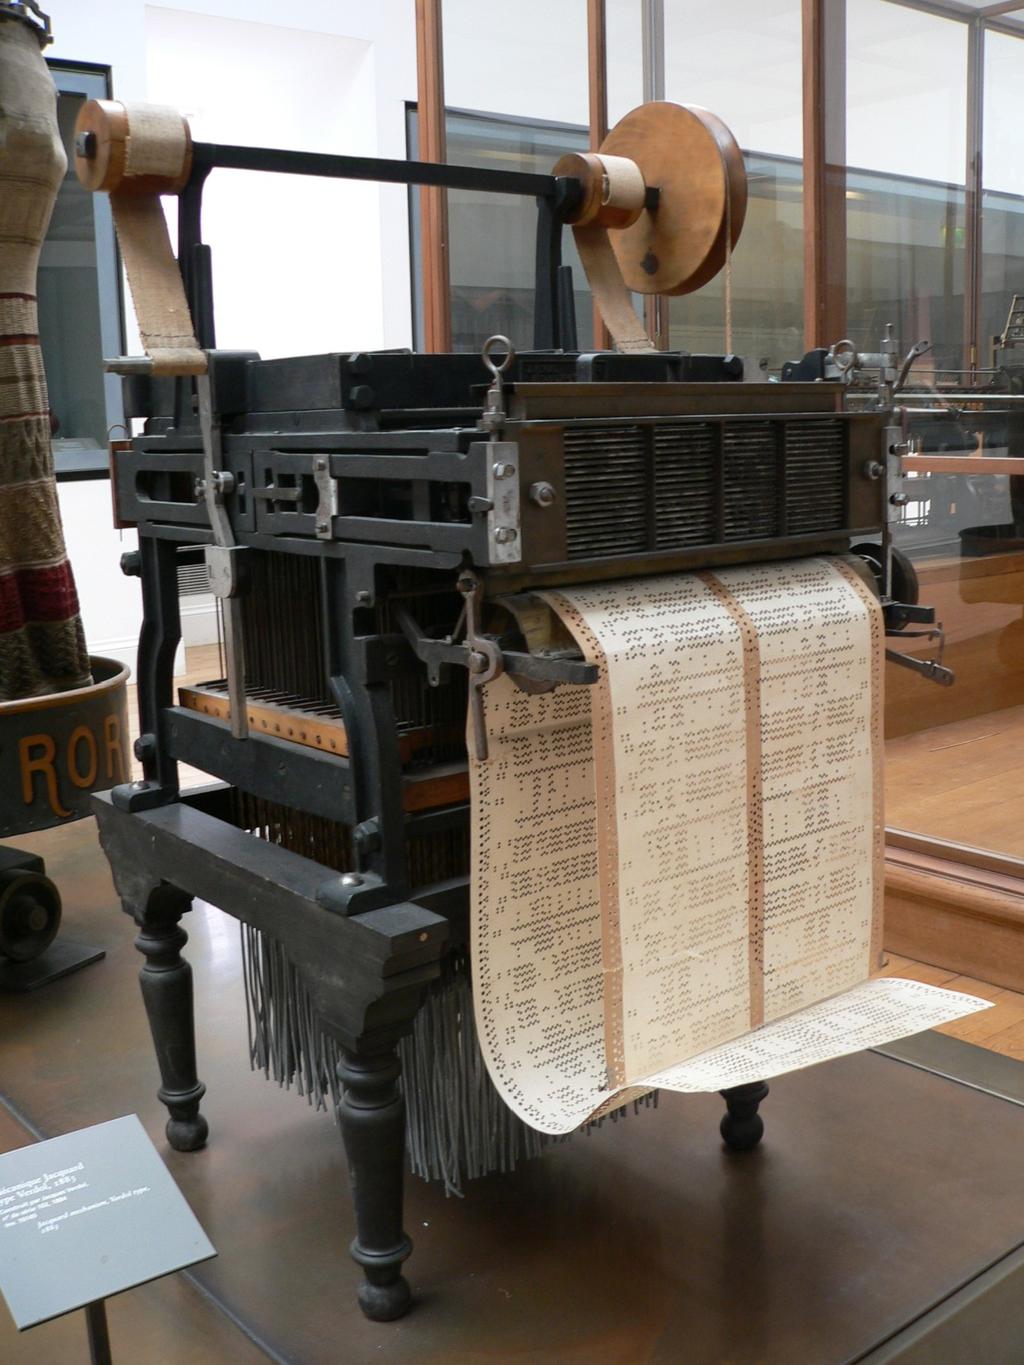 Tear de Jacquard Em 1804, Joseph-Marie Jacquard inventou o tear mecânico, automatizado, capaz de ler os cartões e executar as operações na sequência programada.